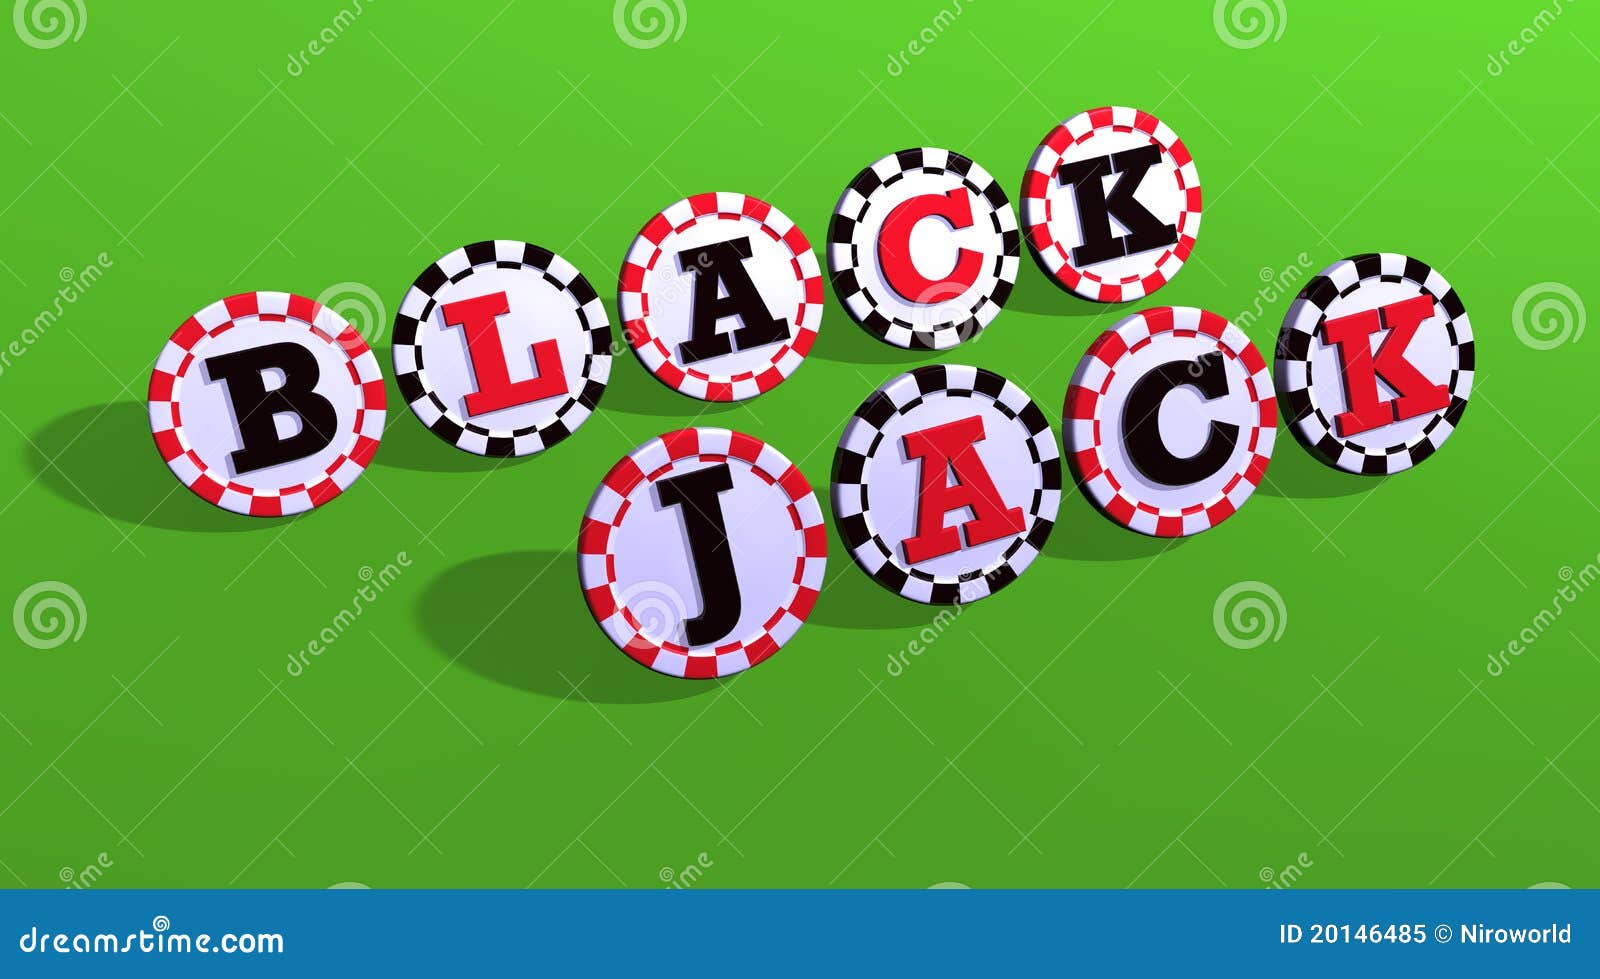 Black Jack 457863